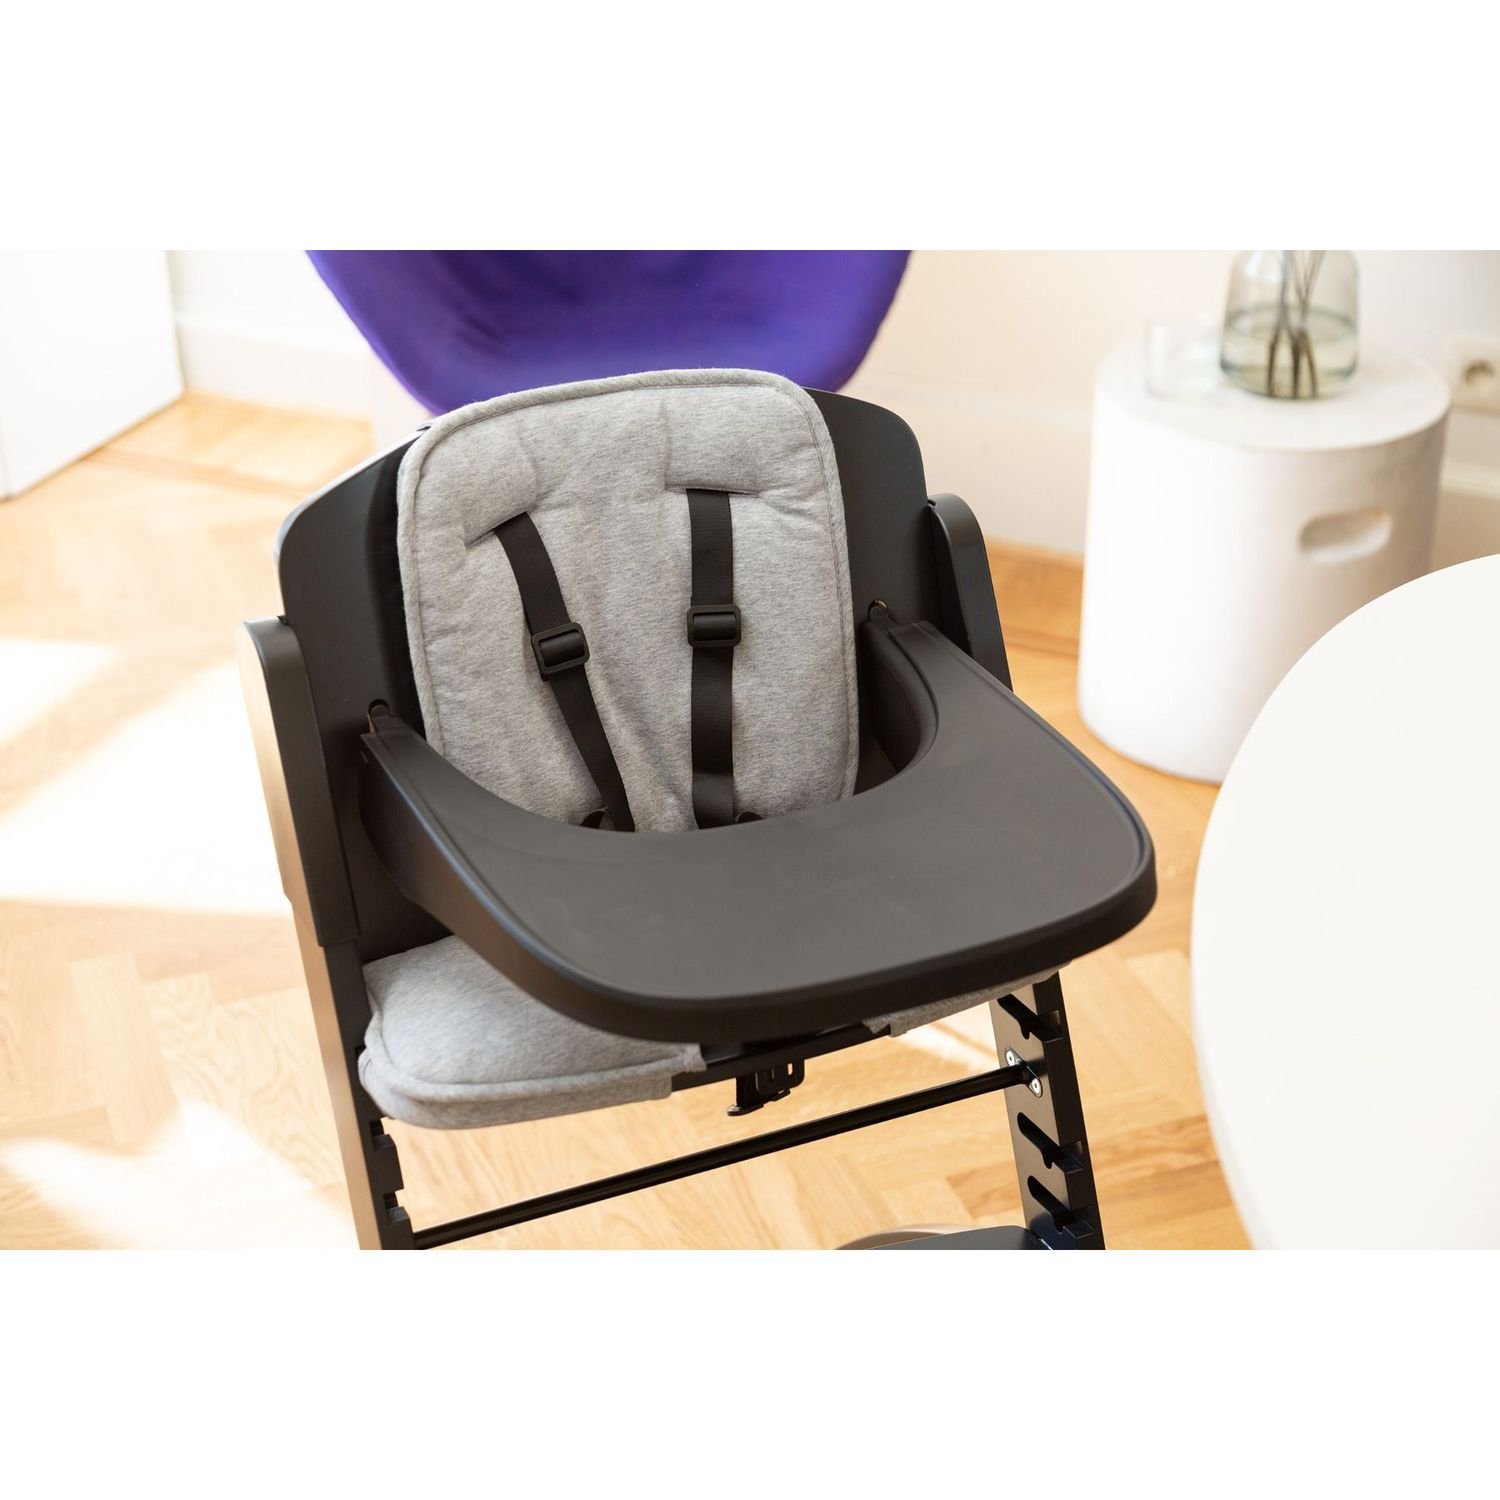 Подушка к стулу для кормления Childhome Evosit High Chair, серая (CCEVOSITJG) - фото 5